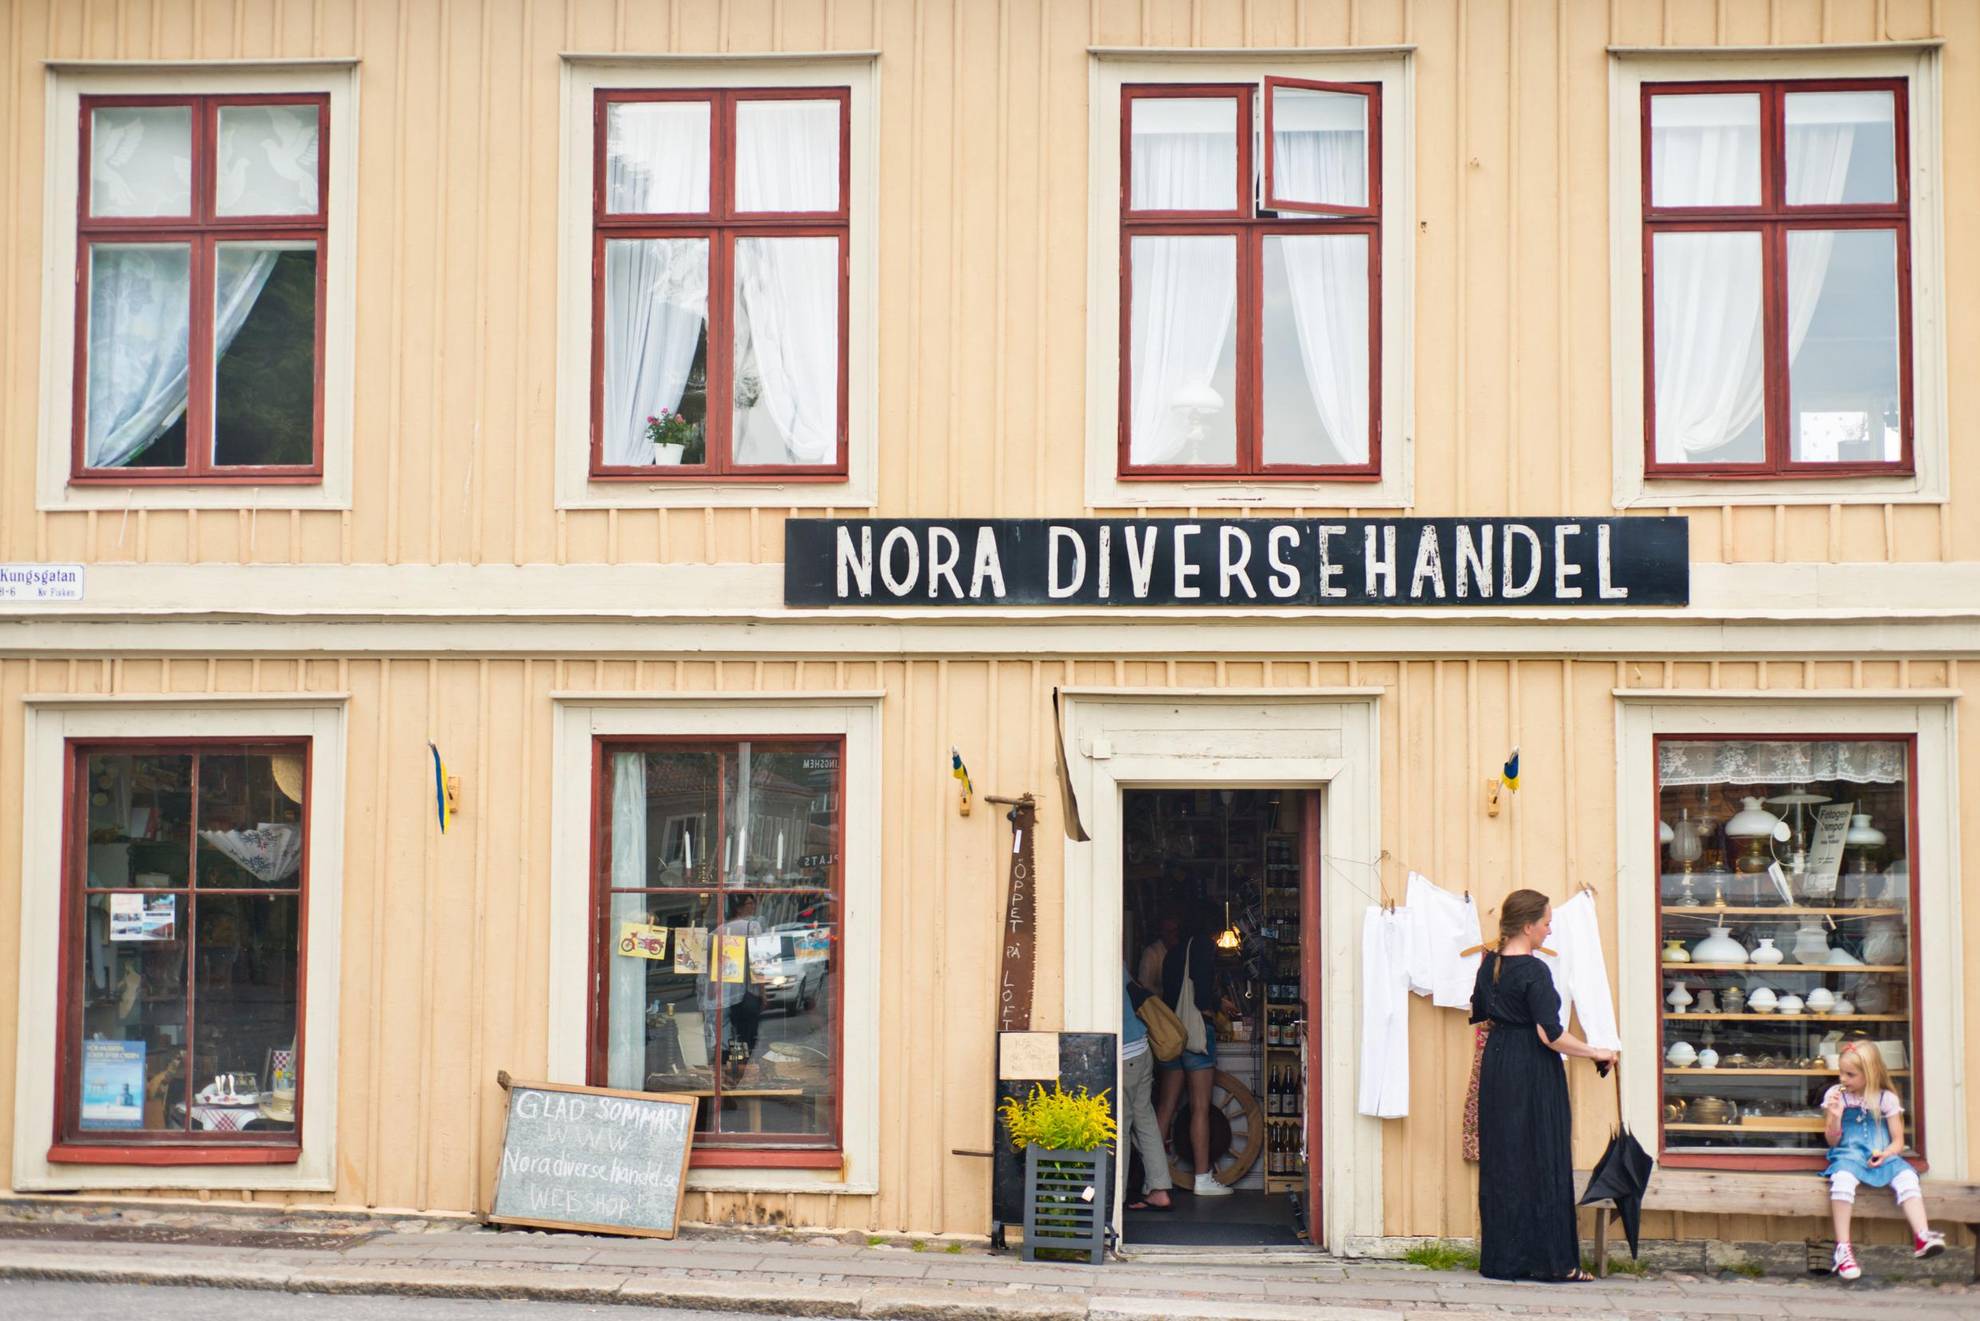 Een kleine winkel in een geel houten huis aan een straat in een oude stad. Op een bord boven de ingang staat Nora Diversehandel. Een vrouw staat en een meisje zit op een bankje voor het huis.